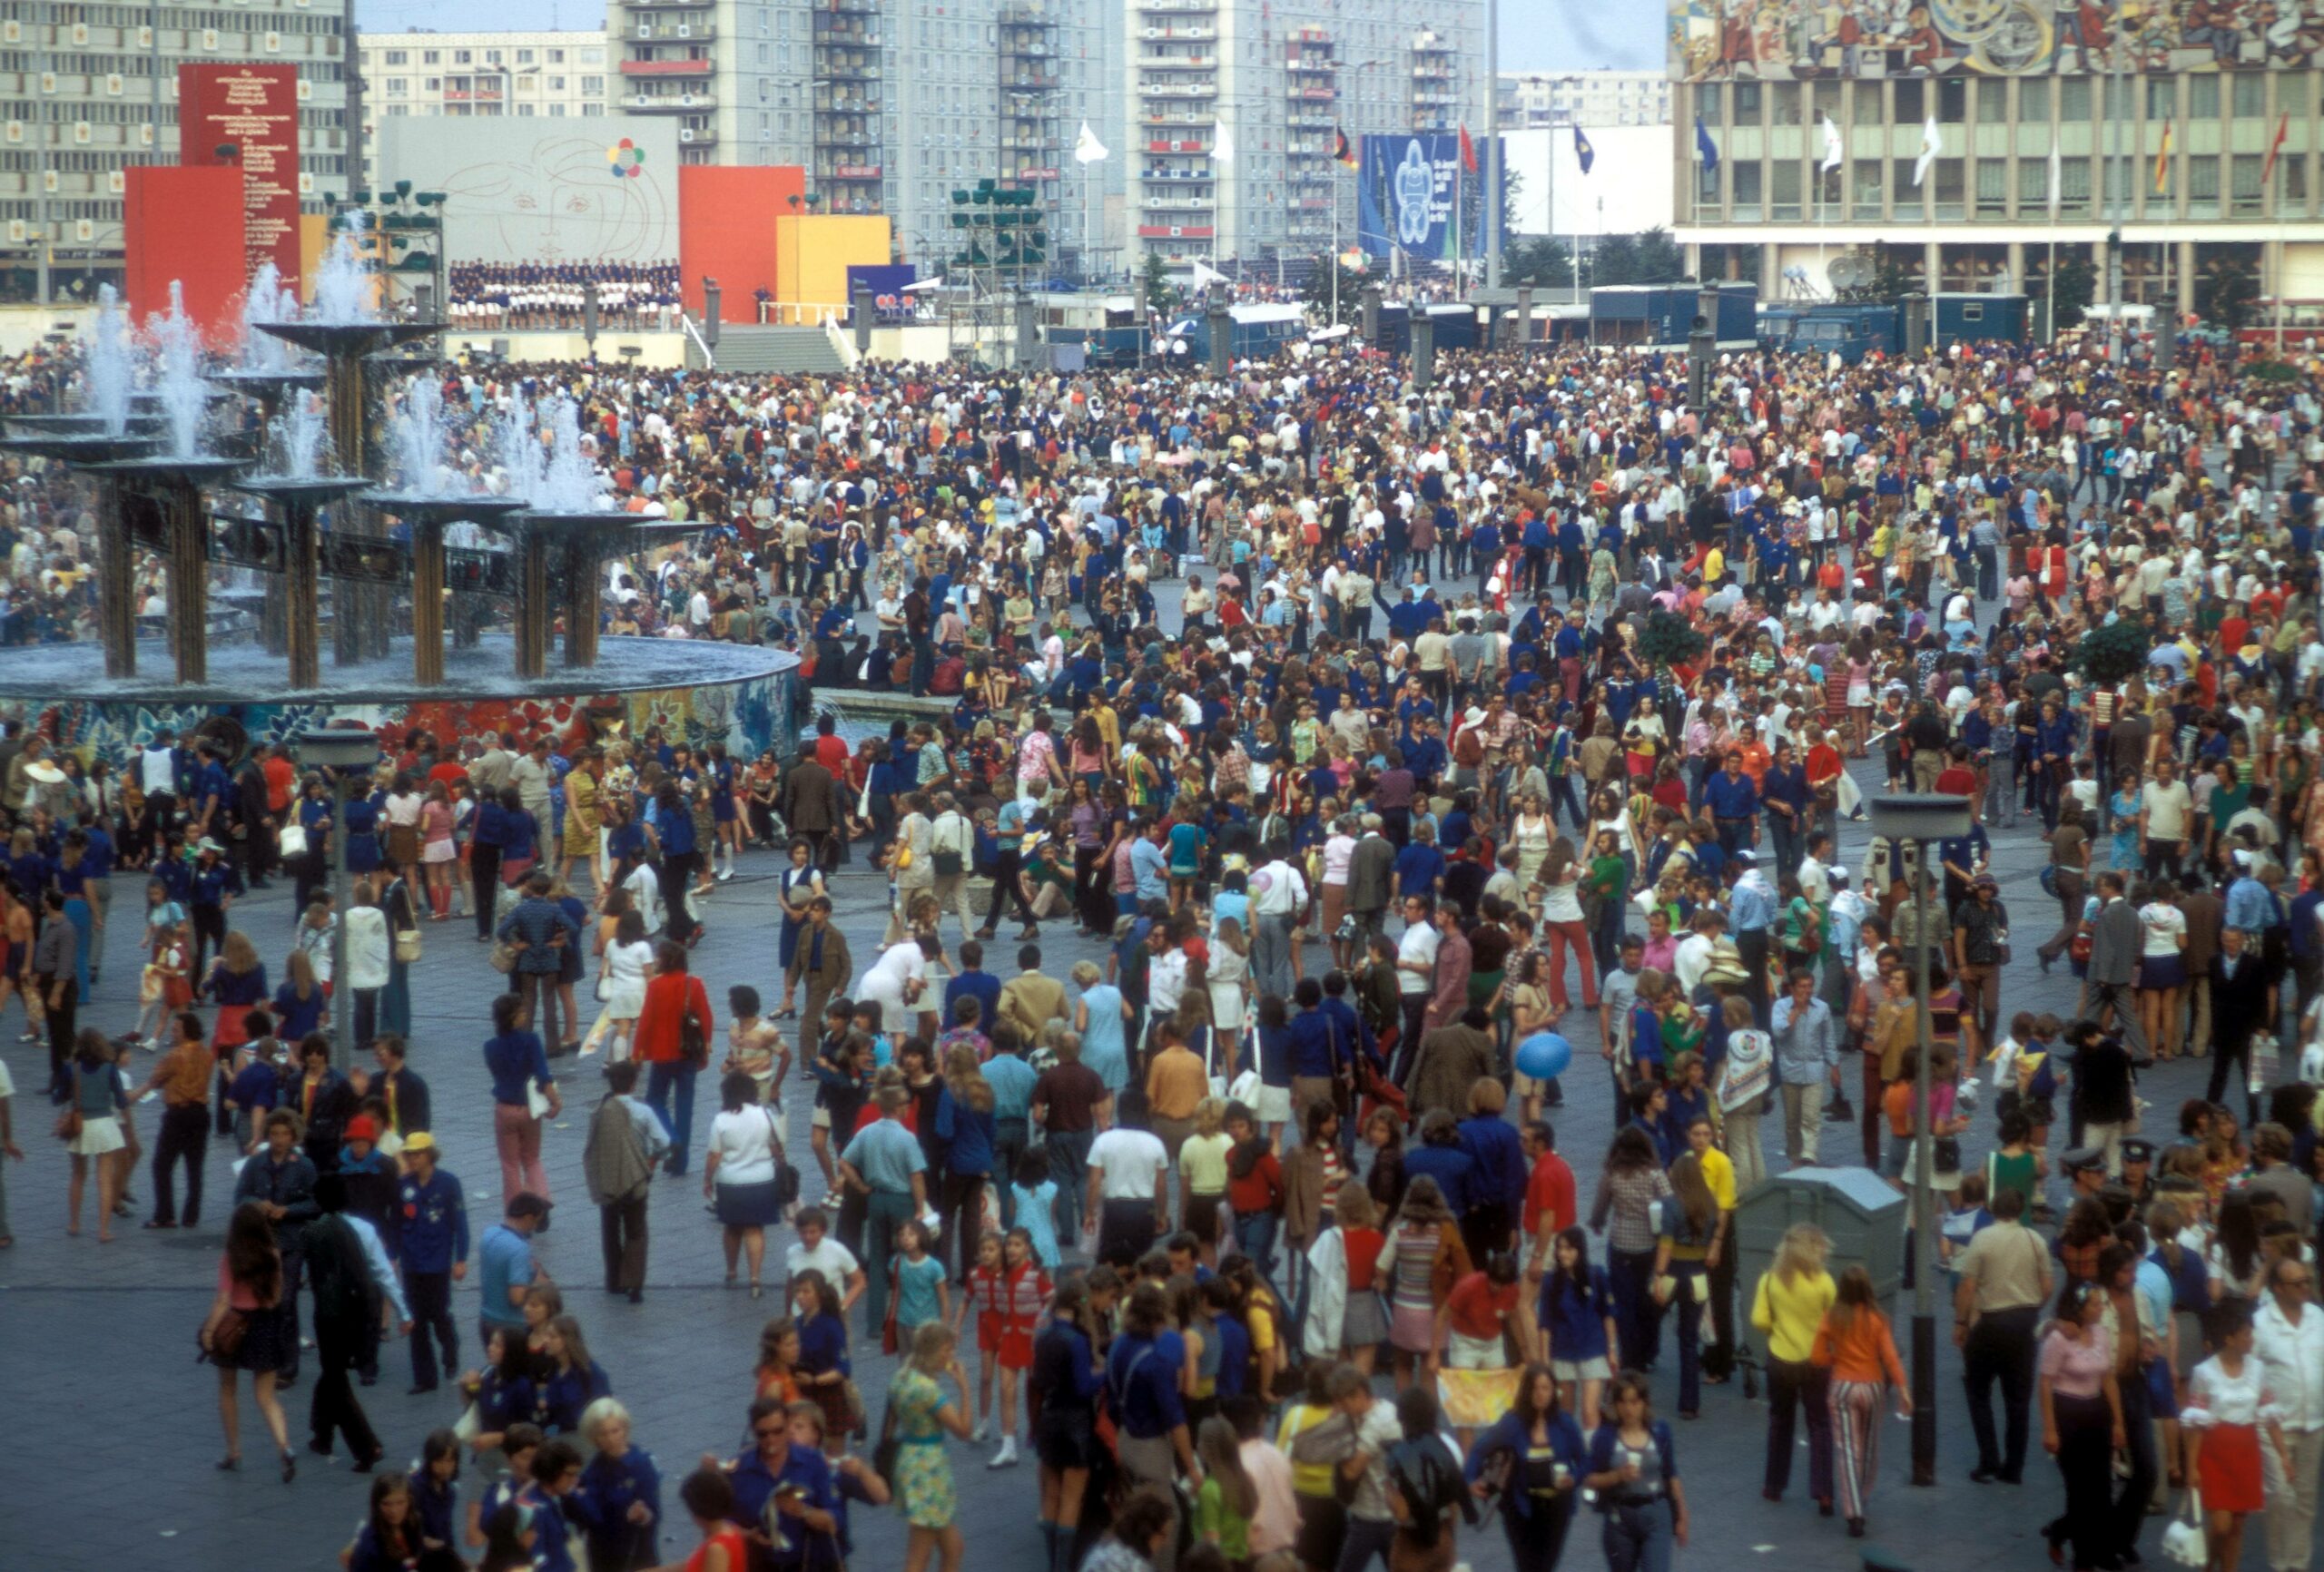 Besucher anlässlich des 25. Republikgeburtstages auf dem Alexanderplatz in Ost-Berlin. Foto: Imago/Sven Simon